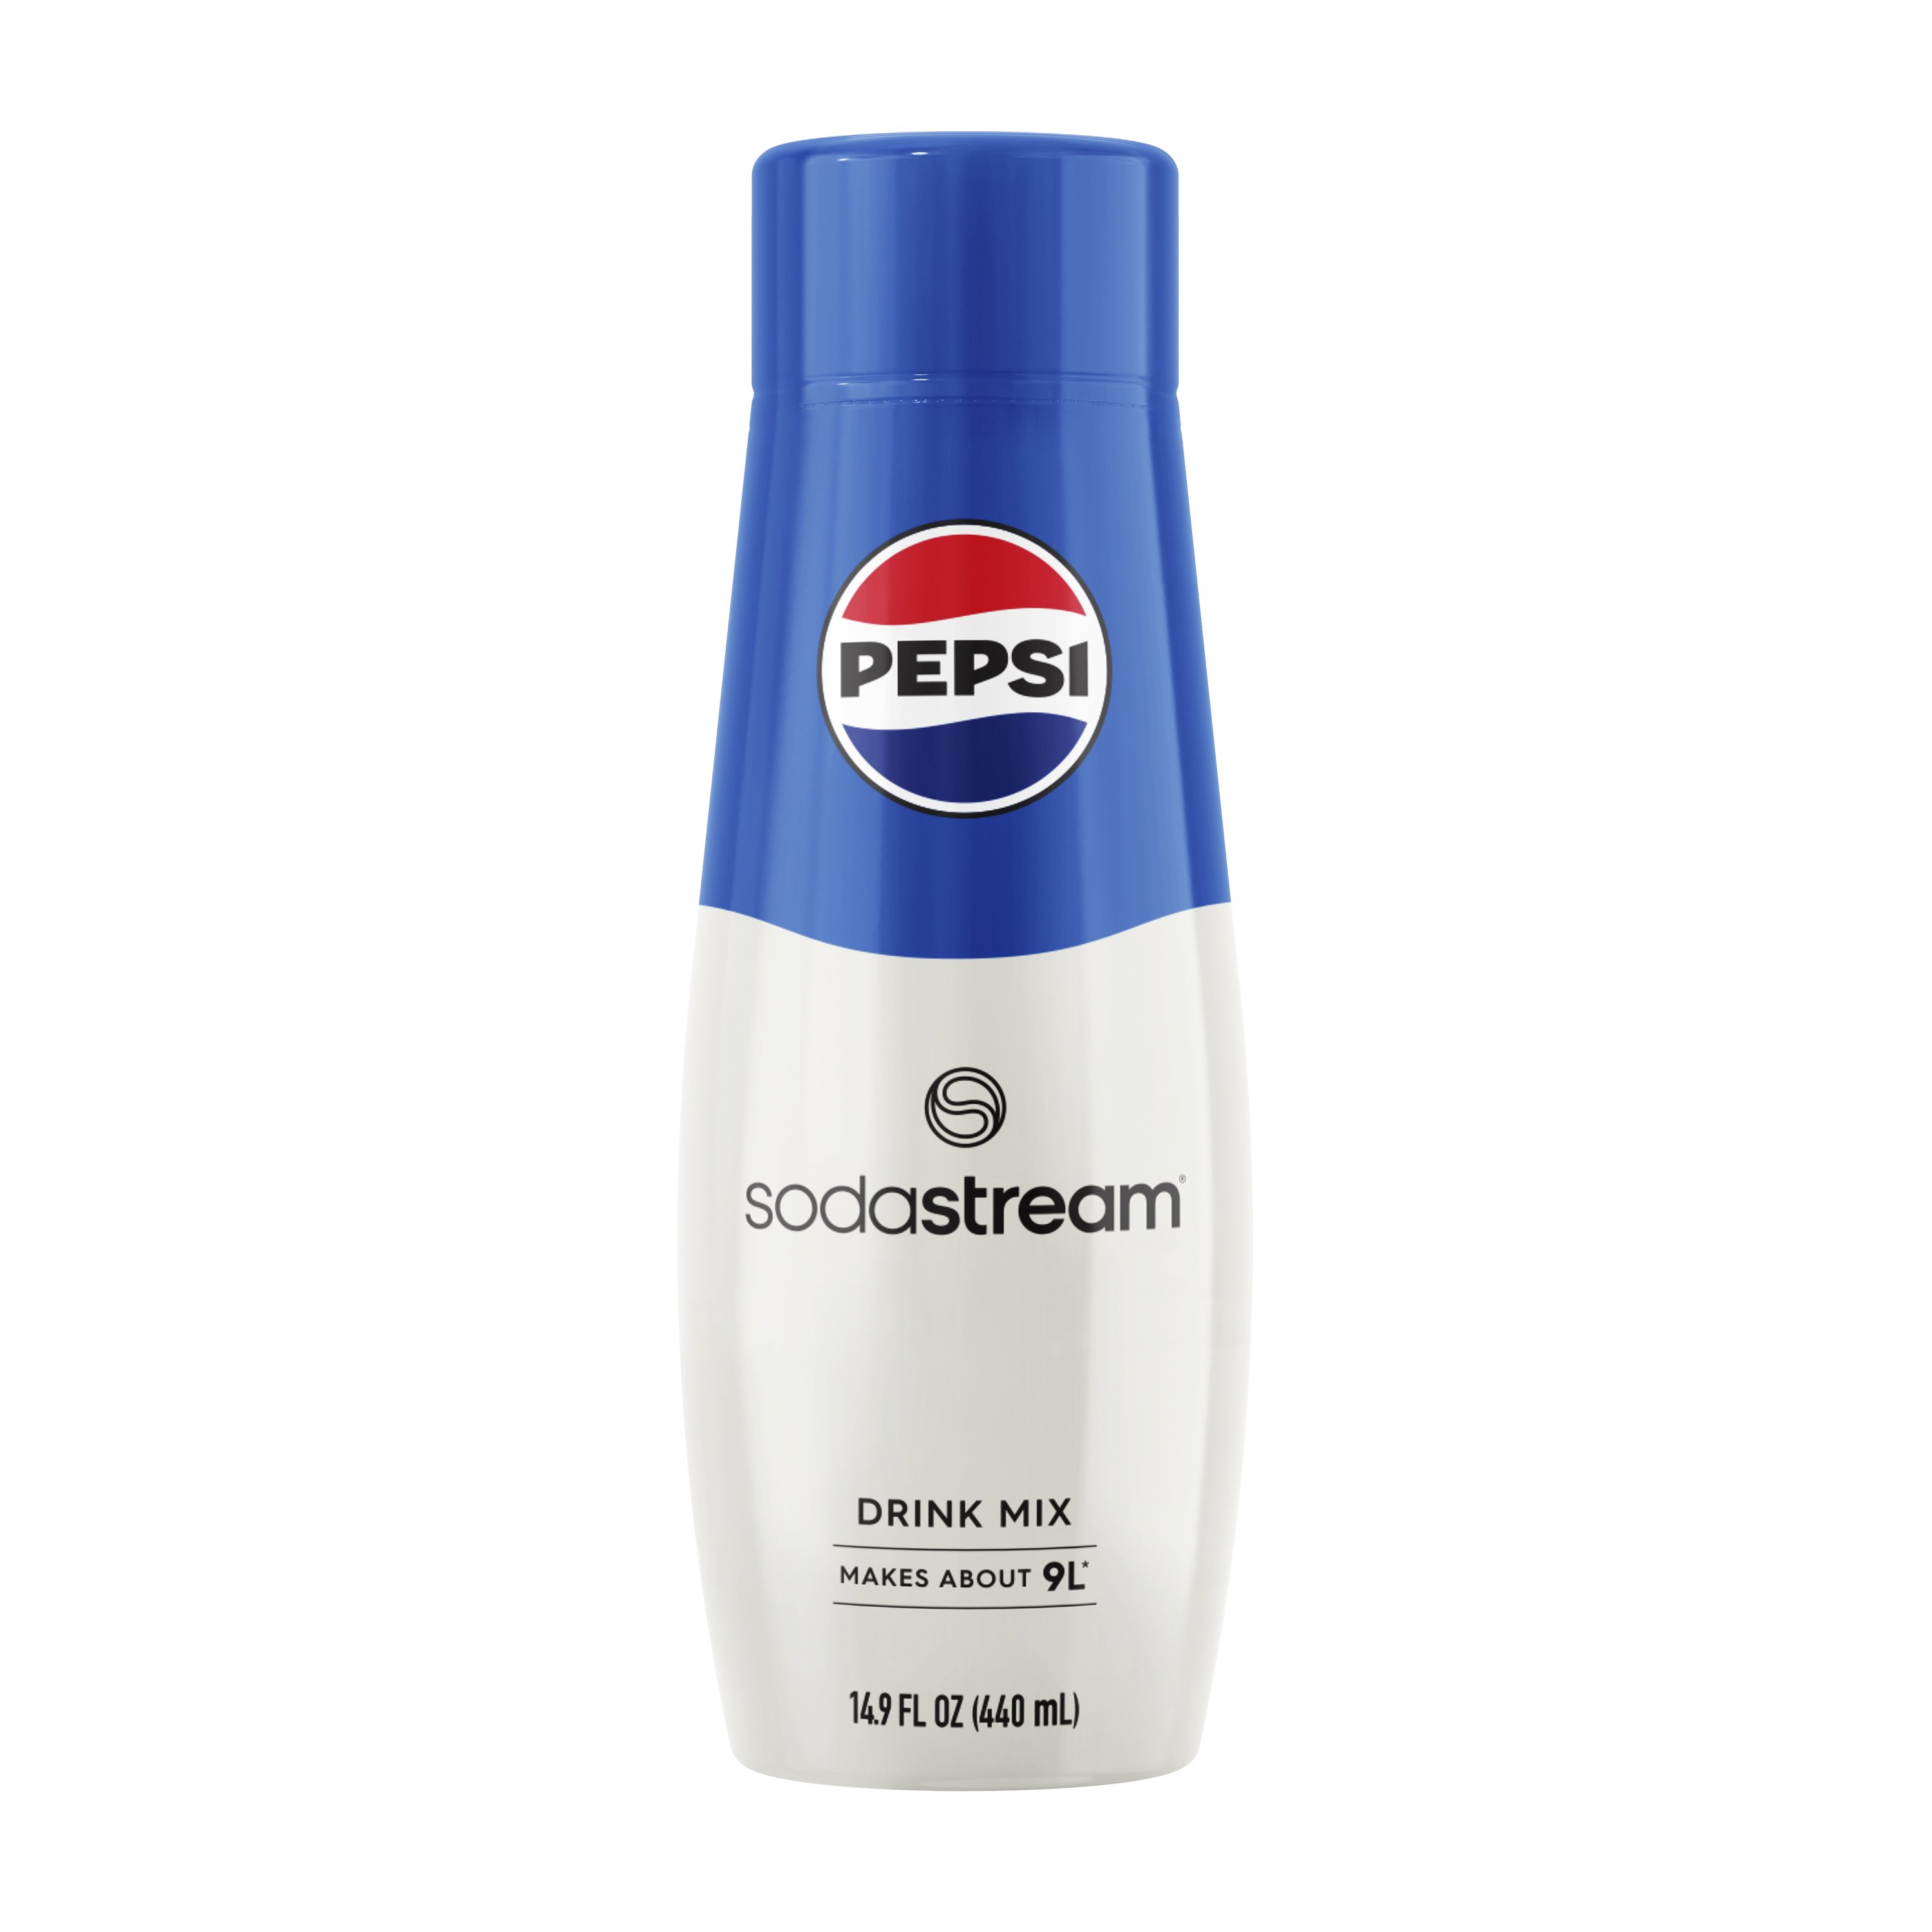 SodaStream Pepsi Drink Mix - Shop Mixes & Flavor Enhancers at H-E-B